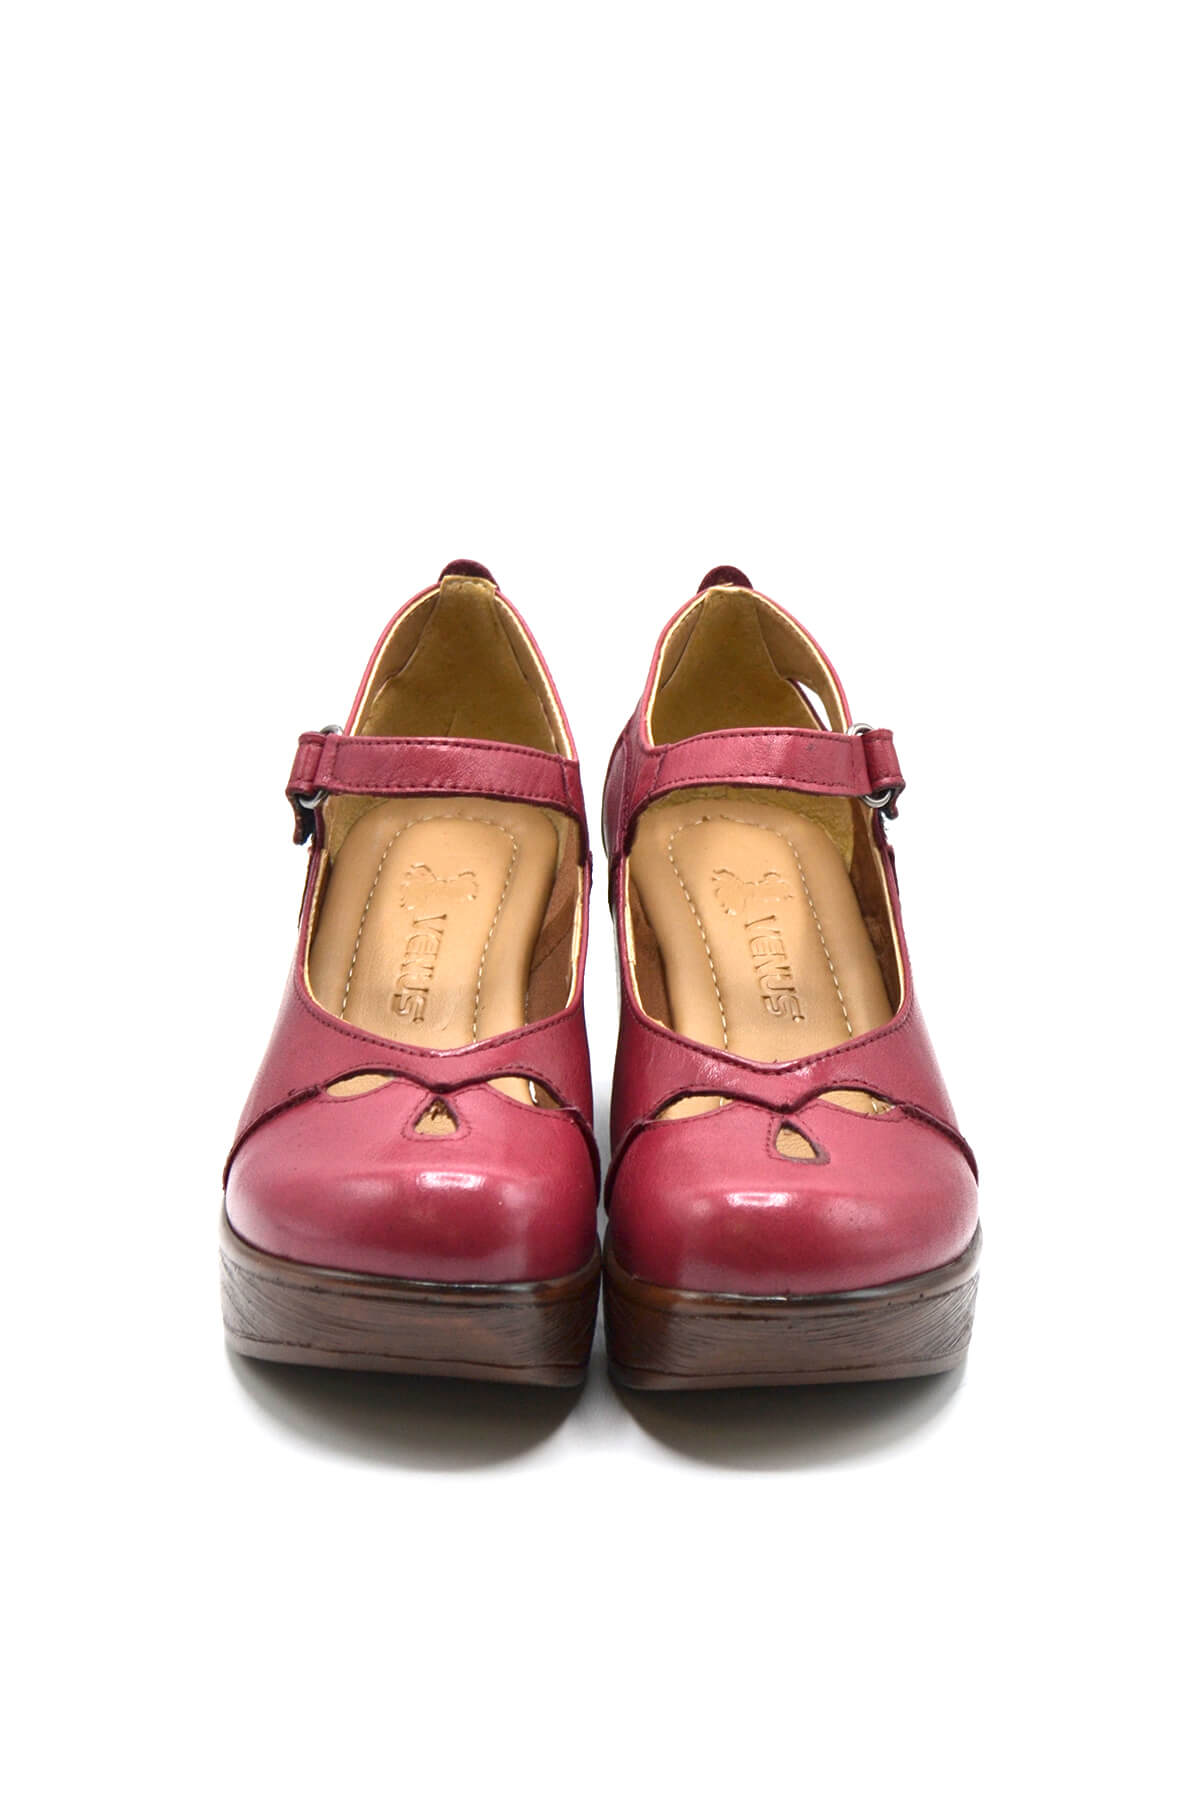 Kadın Apartman Topuk Deri Ayakkabı Vişne 1912501 - Thumbnail